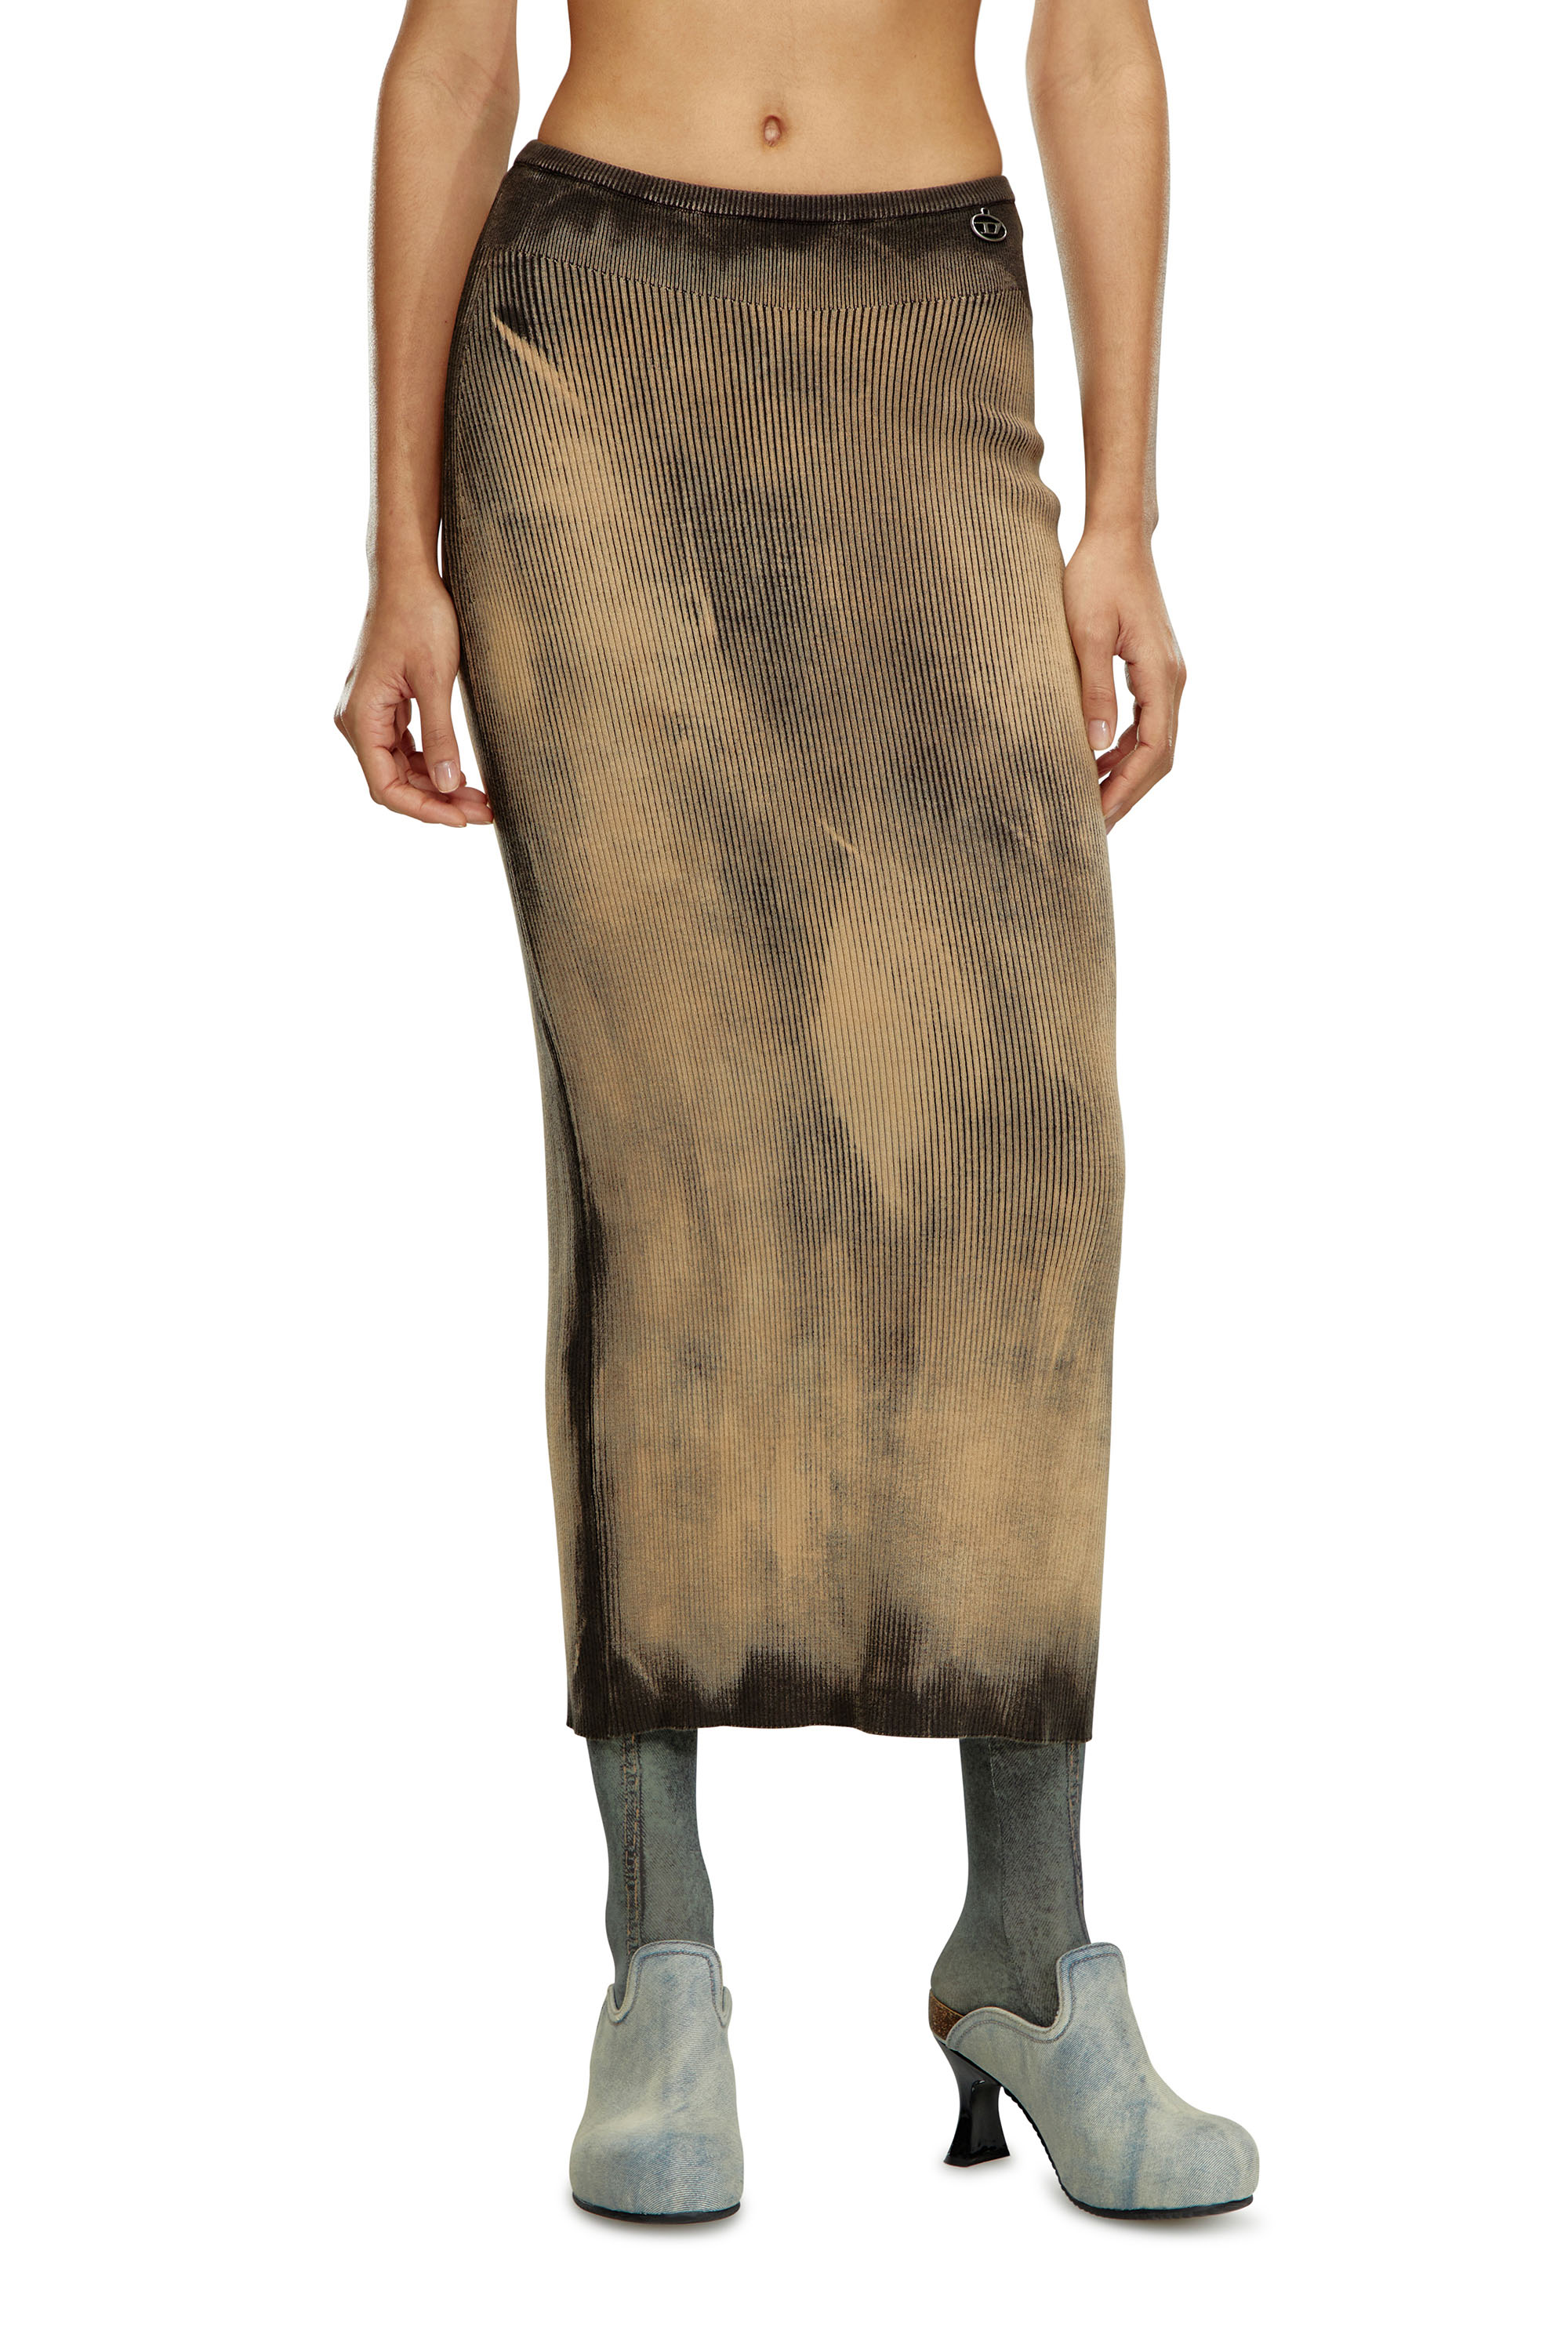 Diesel - M-DELMA, Mujer Falda midi de tejido en canalé tratado in Marrón - Image 1